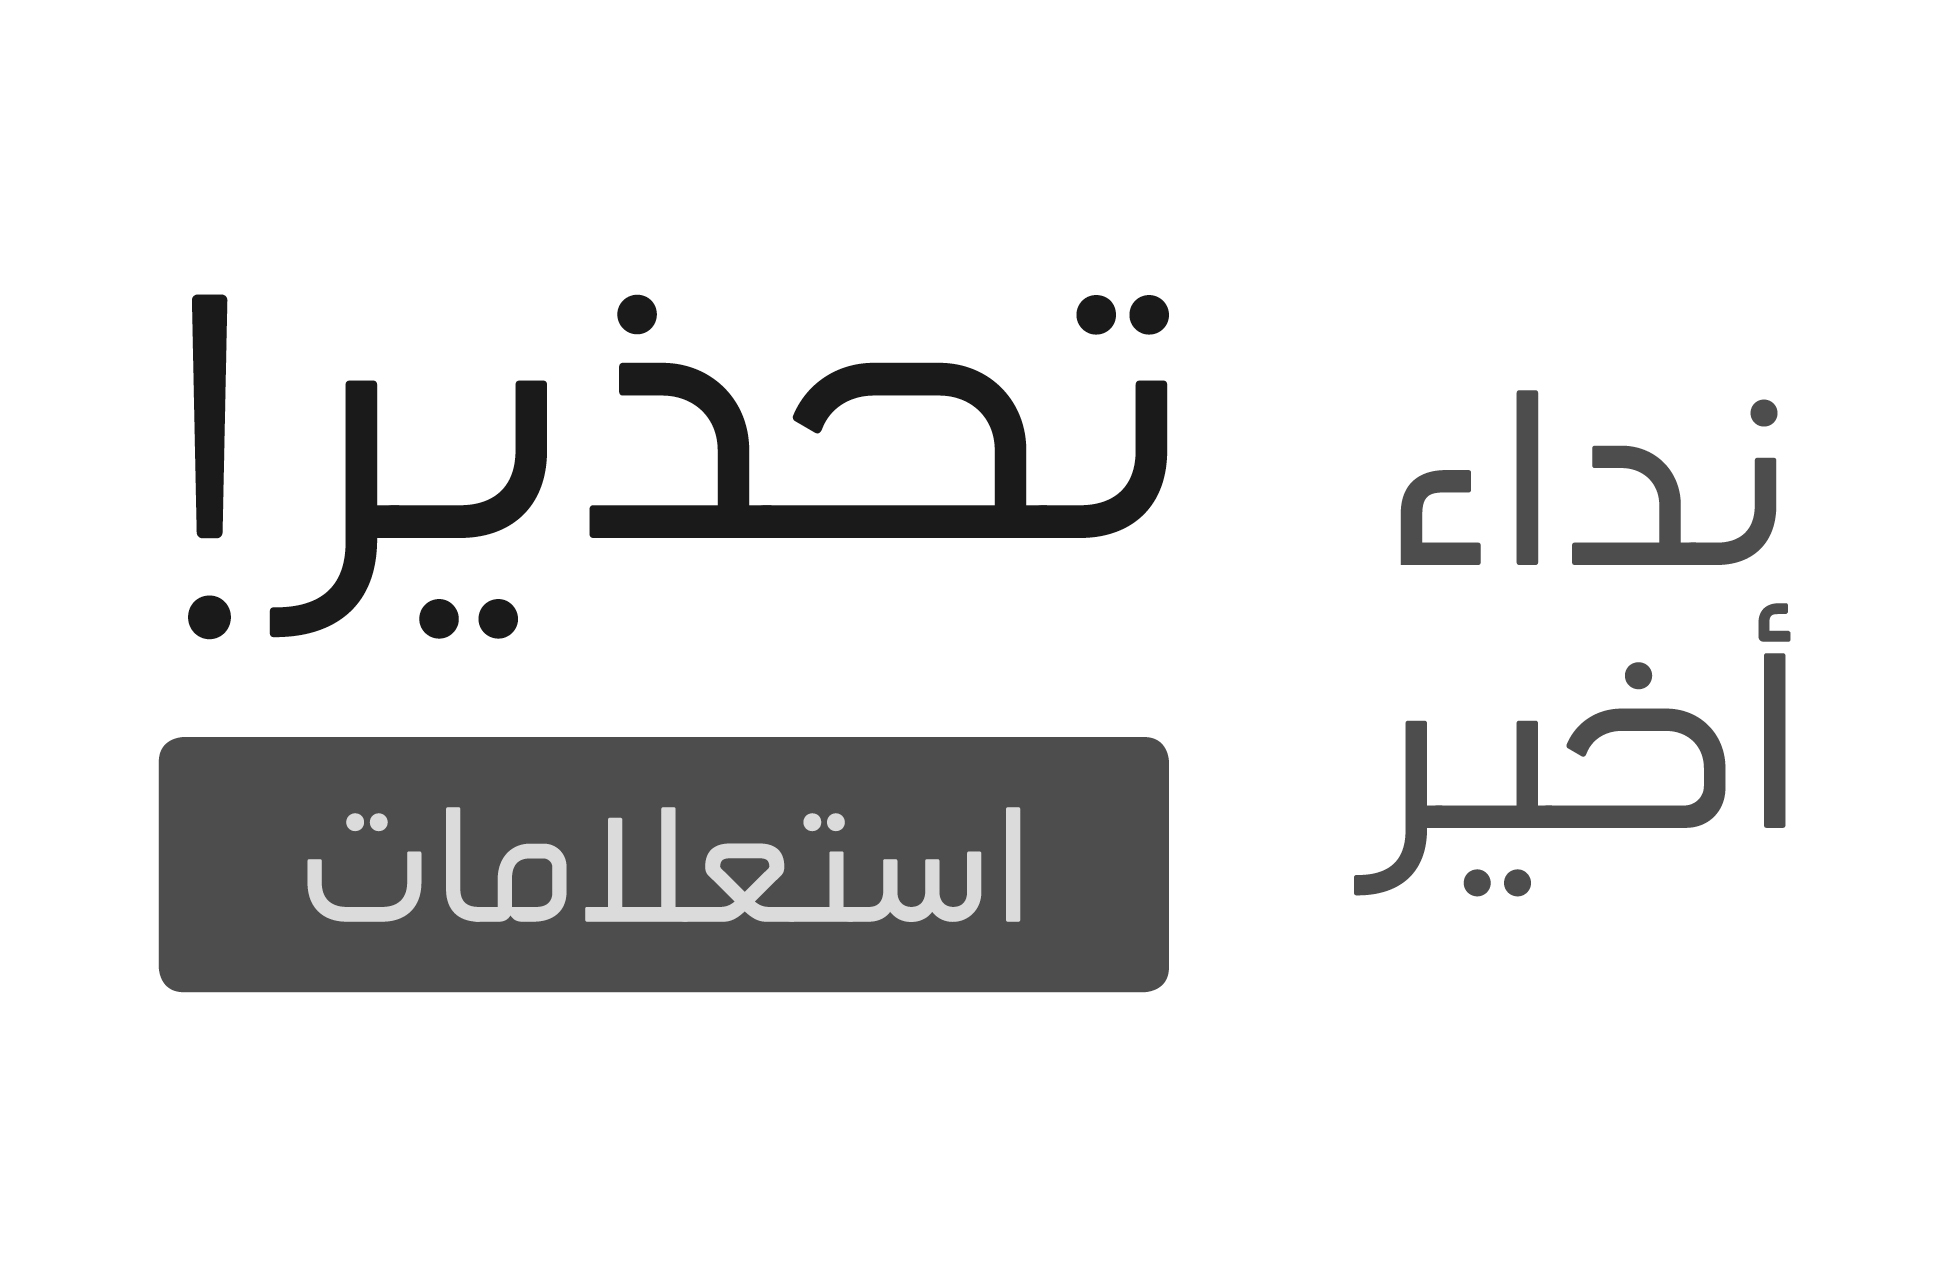 Tasreeh - Arabic Font.